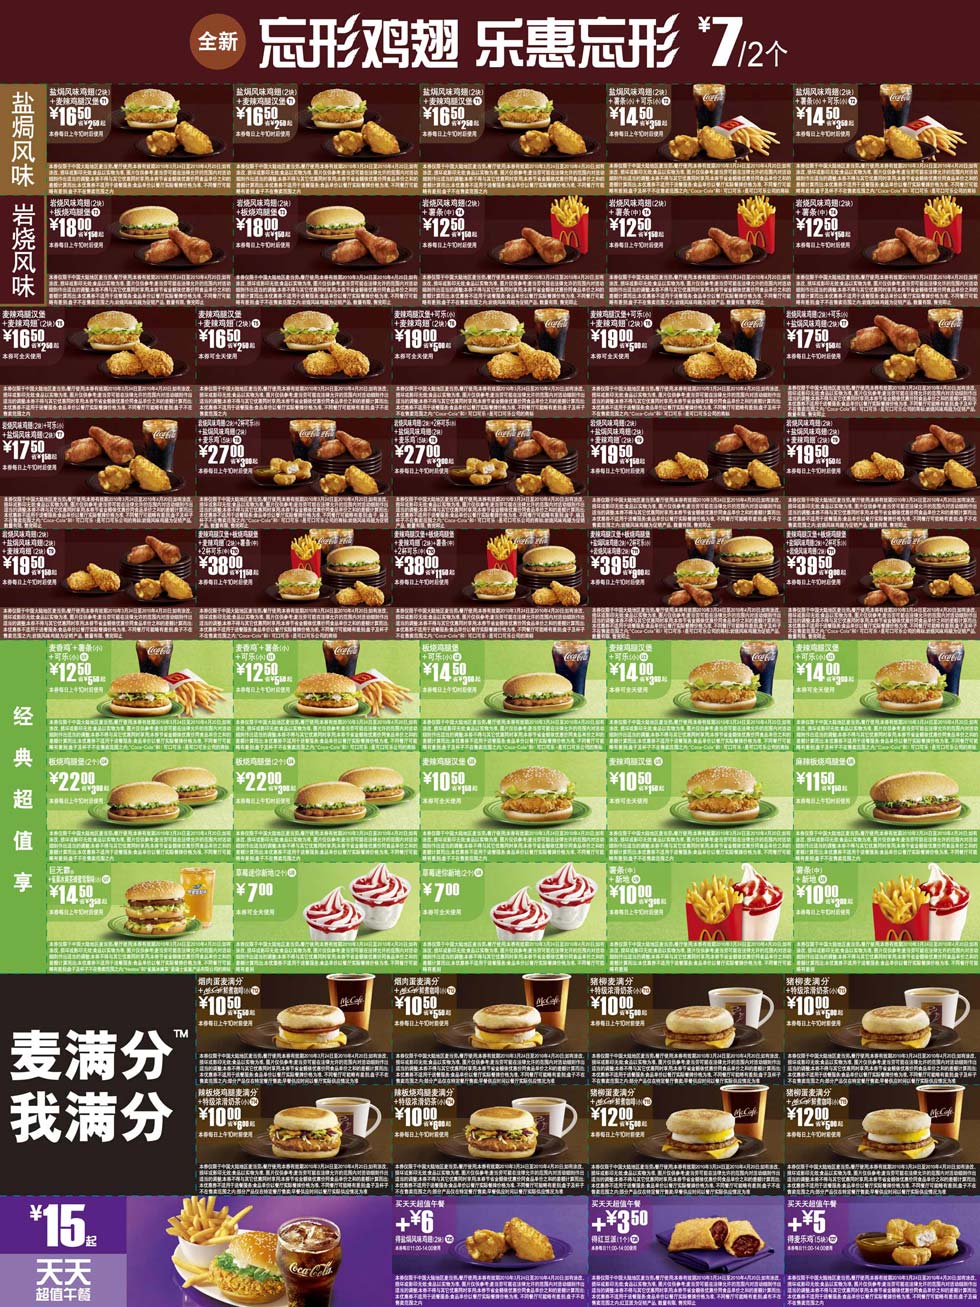 麦当劳优惠券:麦当劳新鸡翅优惠券2010年3月4月整张打印版一 有效期2010年3月24日-2010年4月20日 使用范围:中国大陆地区麦当劳餐厅